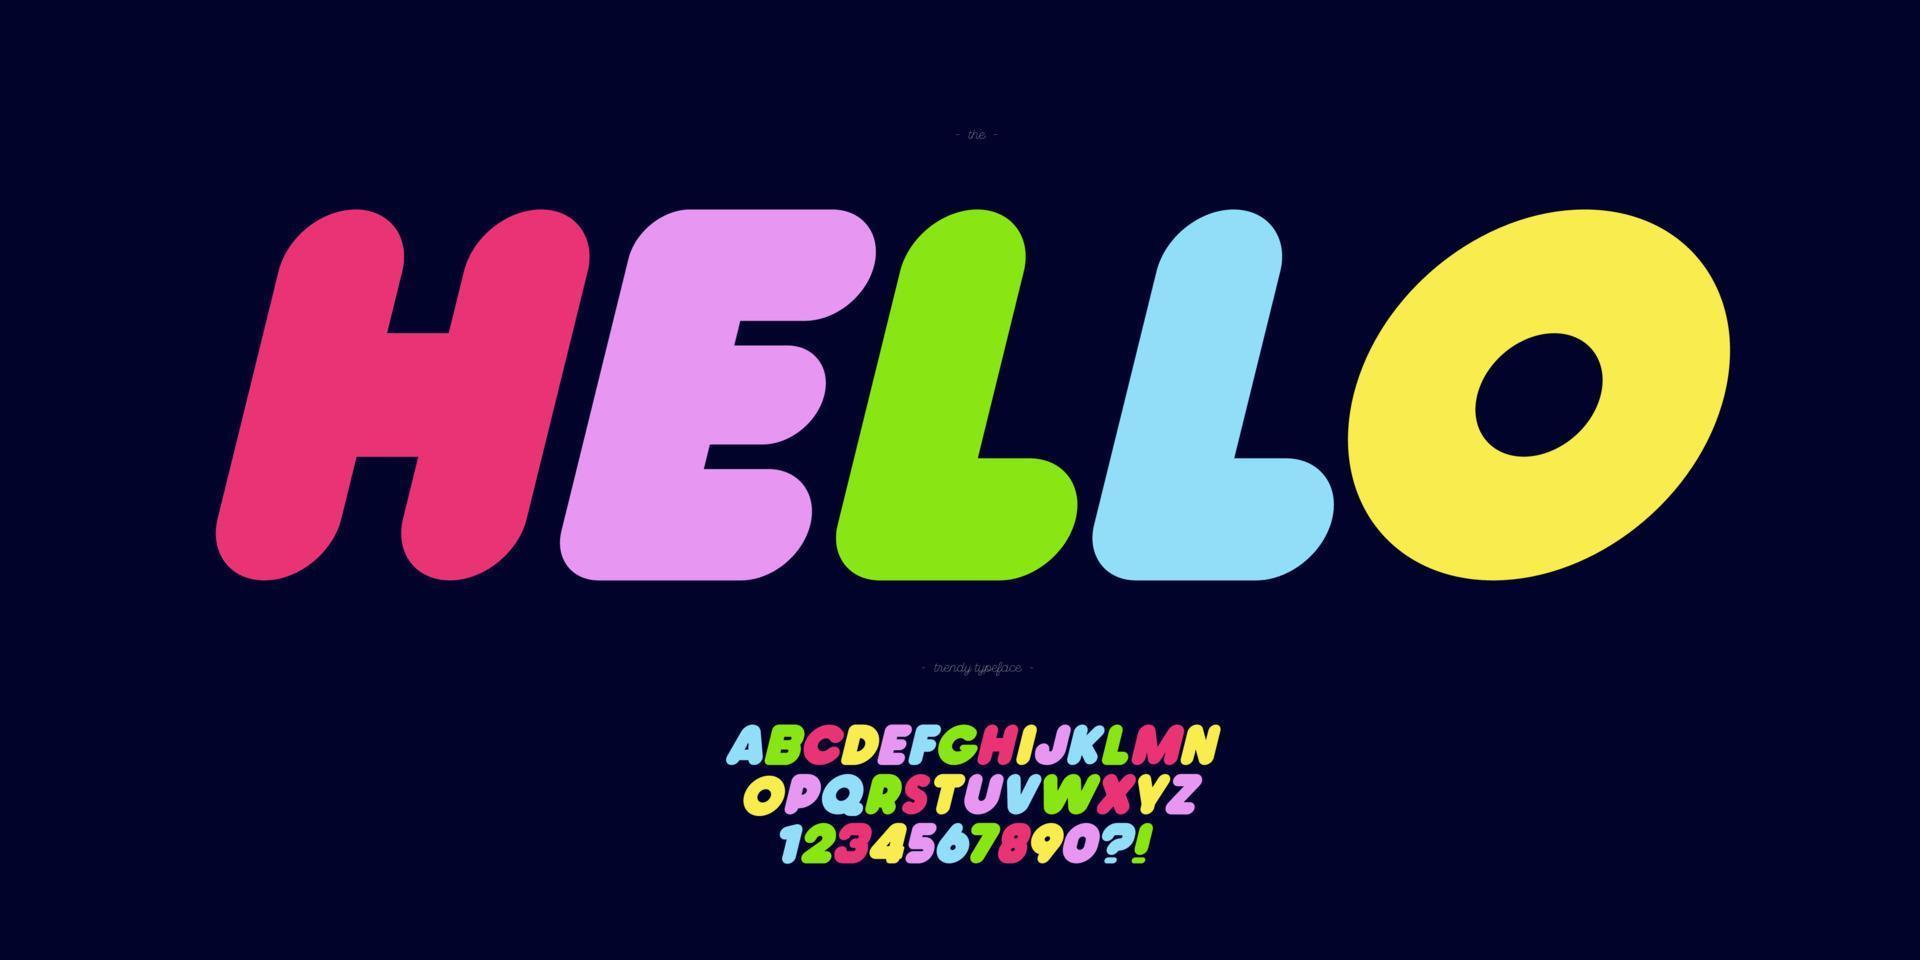 police de vecteur bonjour nom typographie moderne colorée